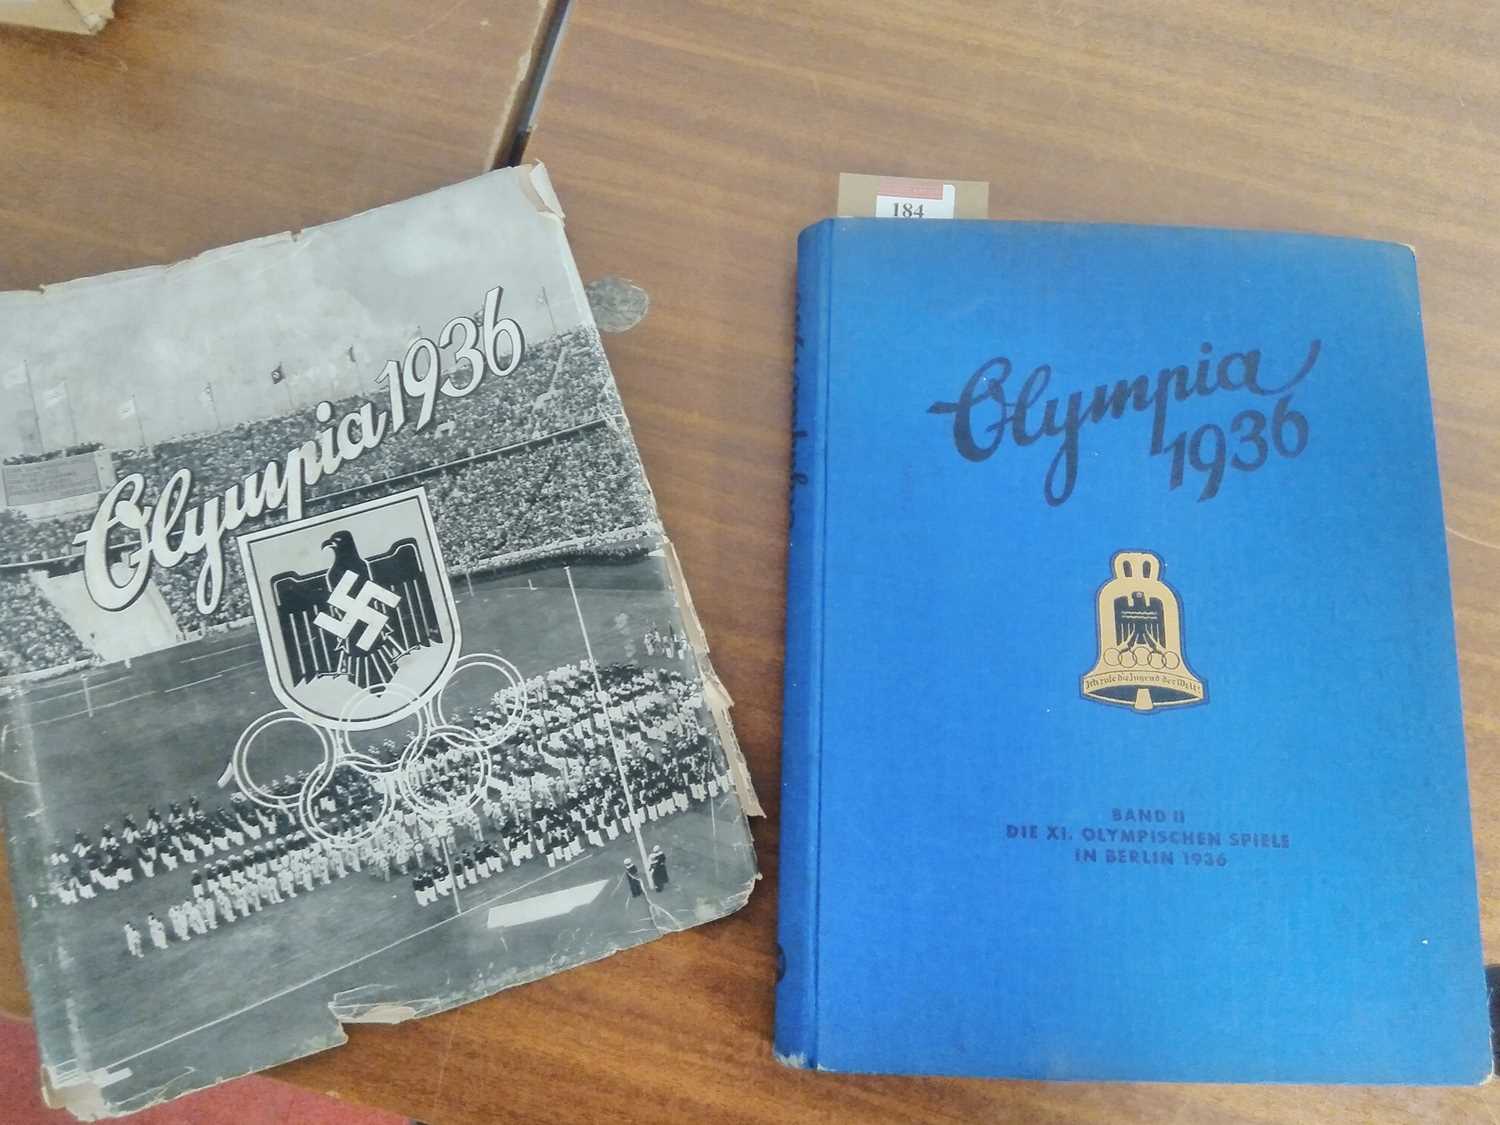 The German Third Reich 1936 Olympics photo-card book "Die Olympischen Spiele 1936", Cigaretten- - Image 5 of 7